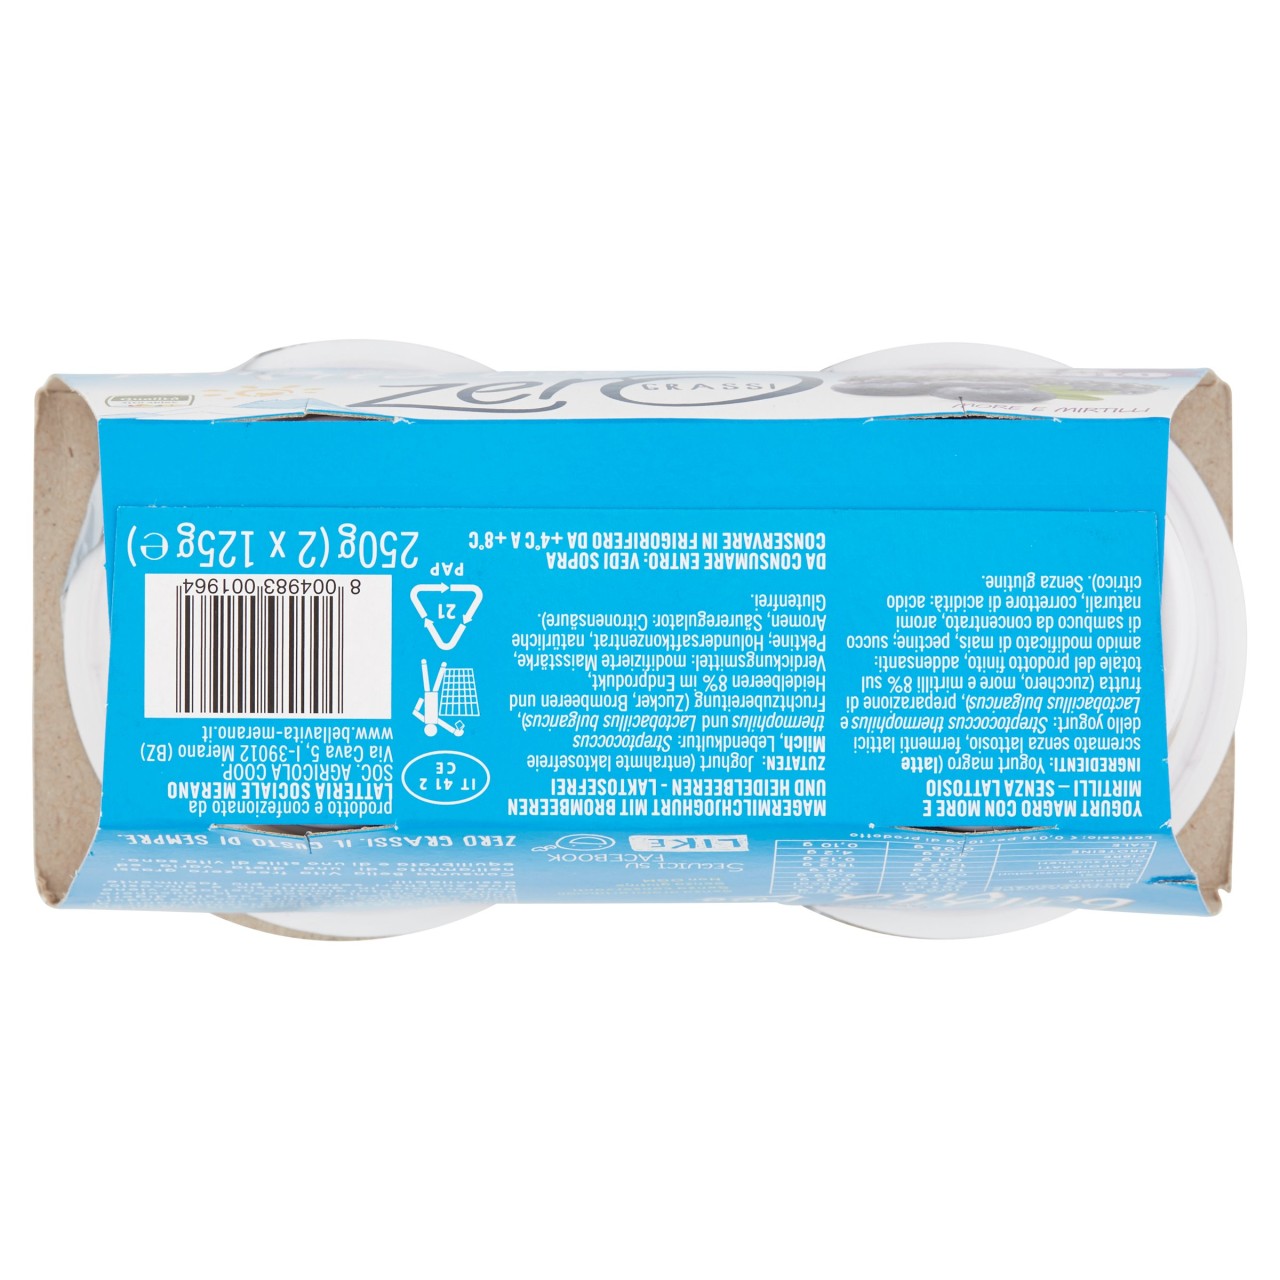 Bella Vita free zero grassi Yogurt Magro More e Mirtilli 2x125g - Dispensa  - Supermercati Gecop